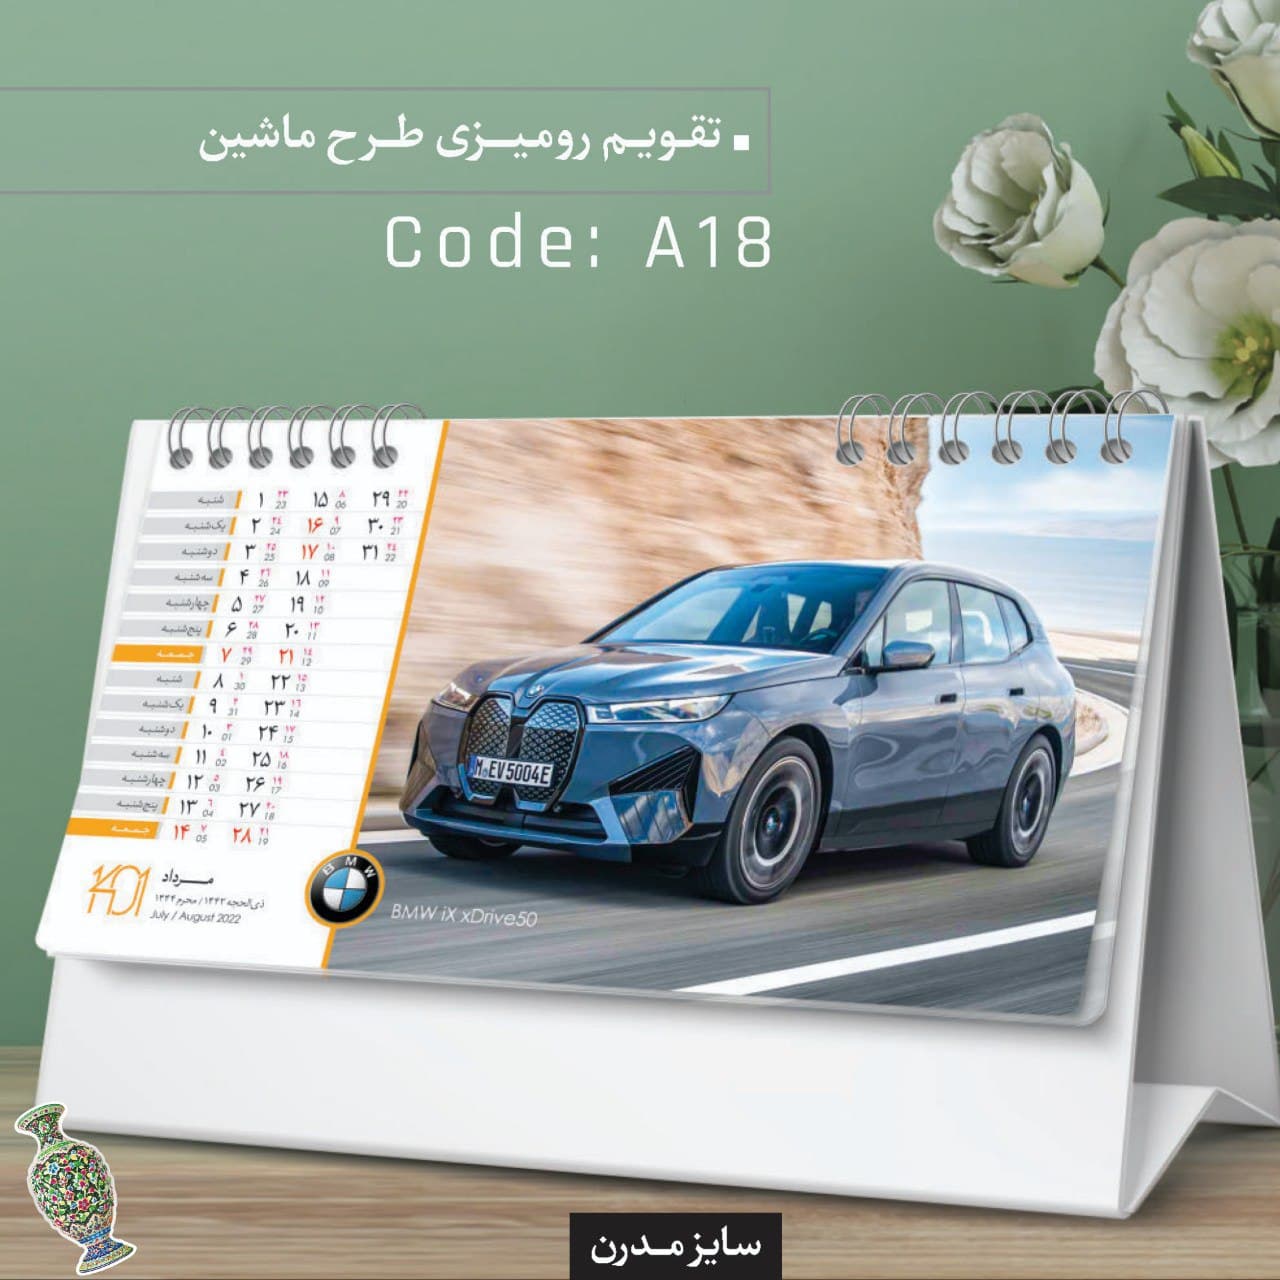 تقویم رومیزی طرح ماشین کد A18 - گروه تبلیغاتی ایران هنر